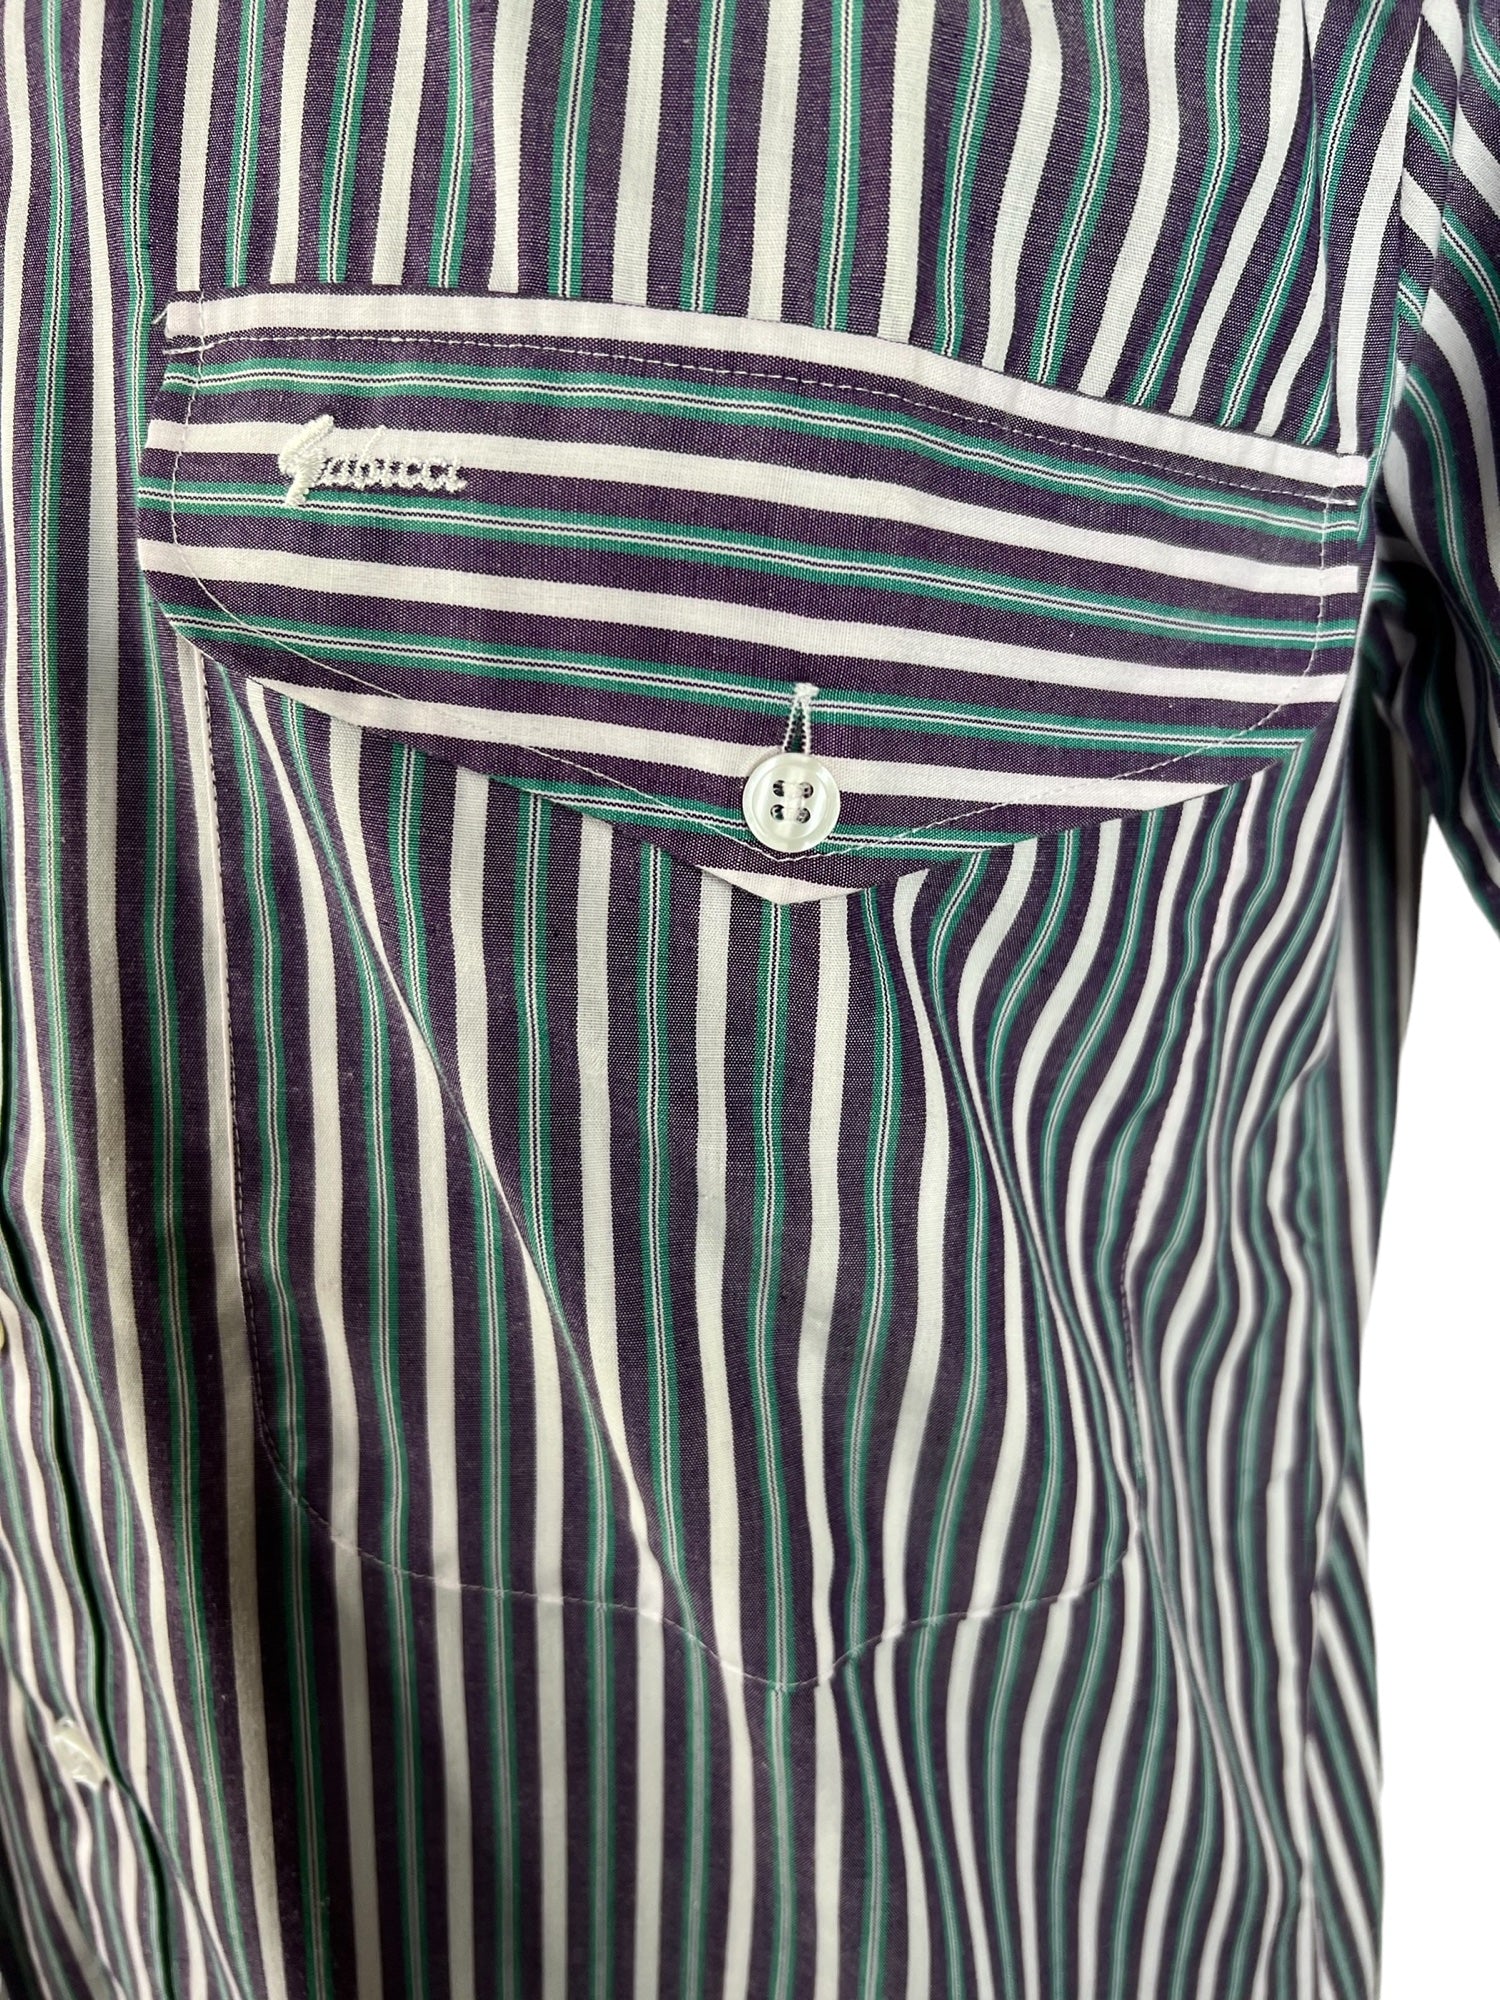 vintage  Urban Village Vintage  turquoise stripe  top  stripey  Stripes  striped  stripe pattern  stripe detailing  stripe  short sleeved shirt  short sleeved  short sleeve  Shirt  purple  multi  mens  M-L  M  L  Gabicci  embroidered logo  Embroidered  70s  1970s